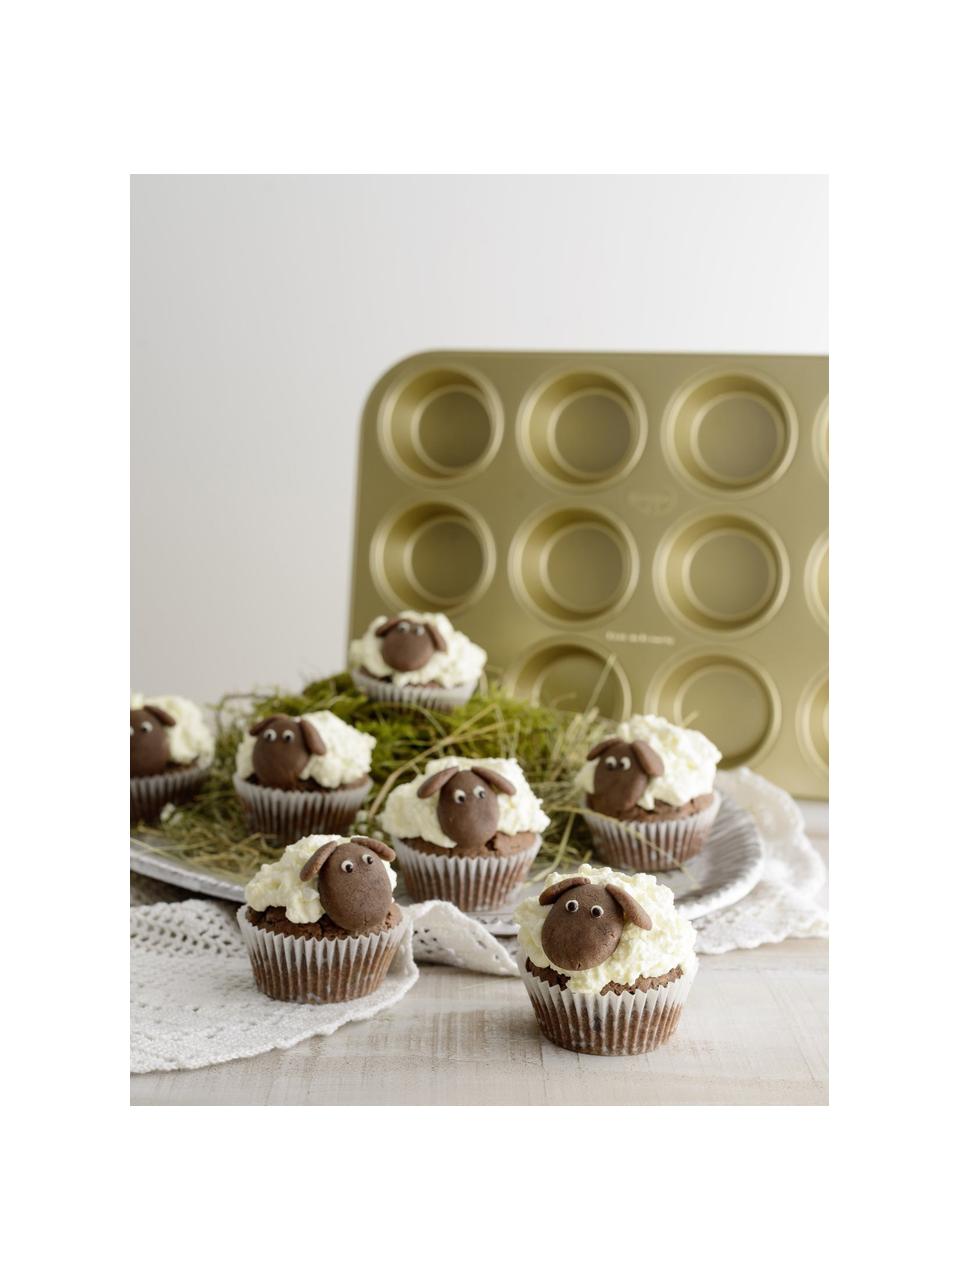 COOCK - Moule à Muffins avec 12 Moules à Cupcakes - Antiadhésif